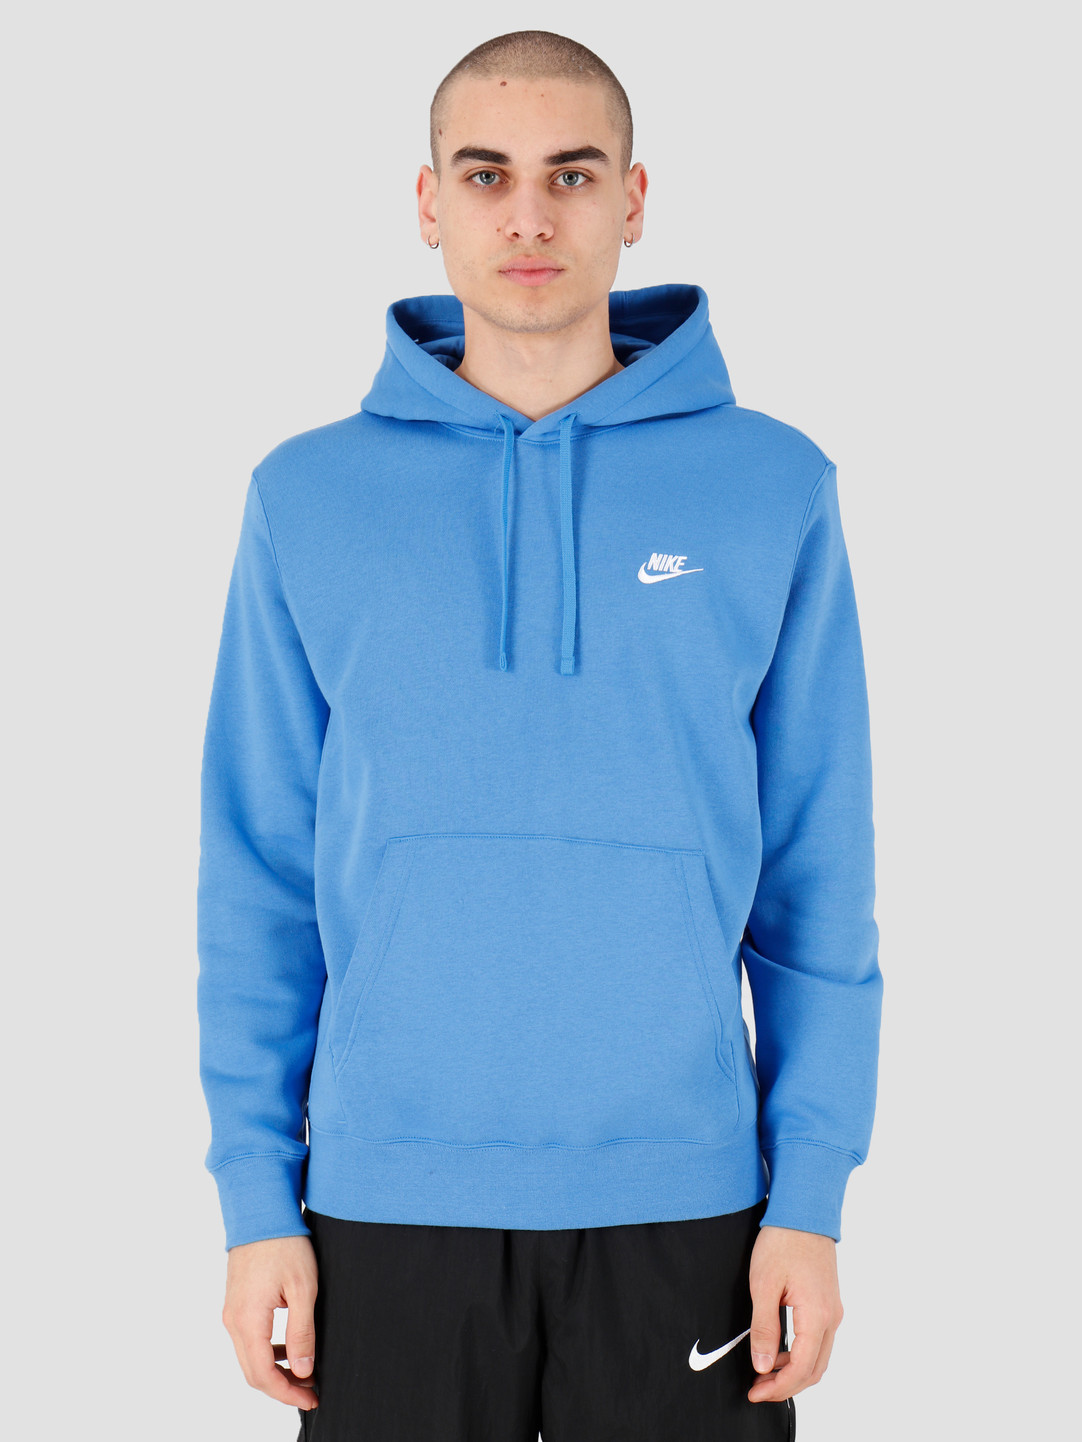 nike hoodie pacific blue